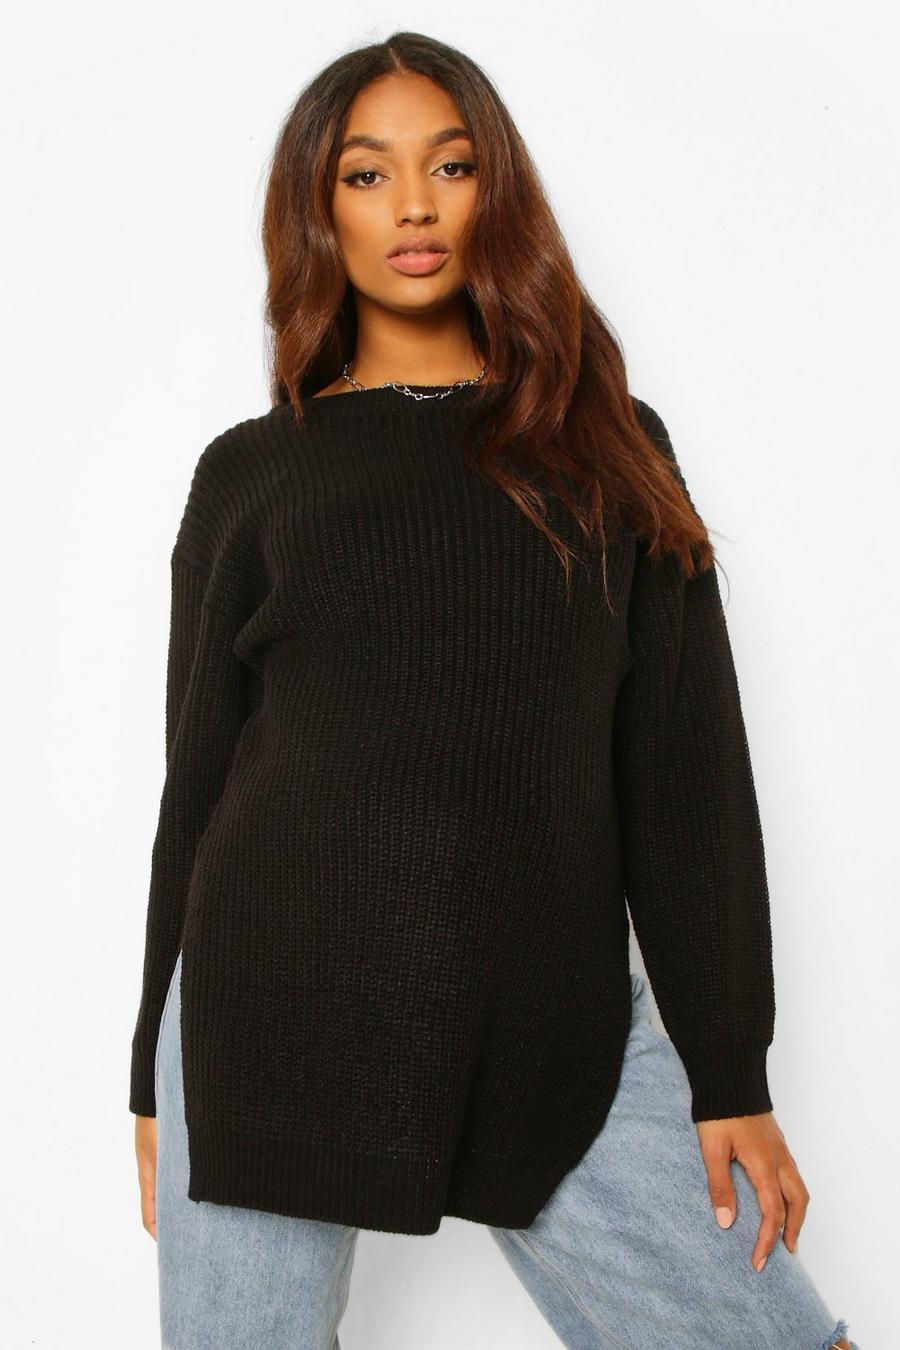 שחור סוודר עם שסע צידי בגזרה ארוכה בגדי היריון image number 1